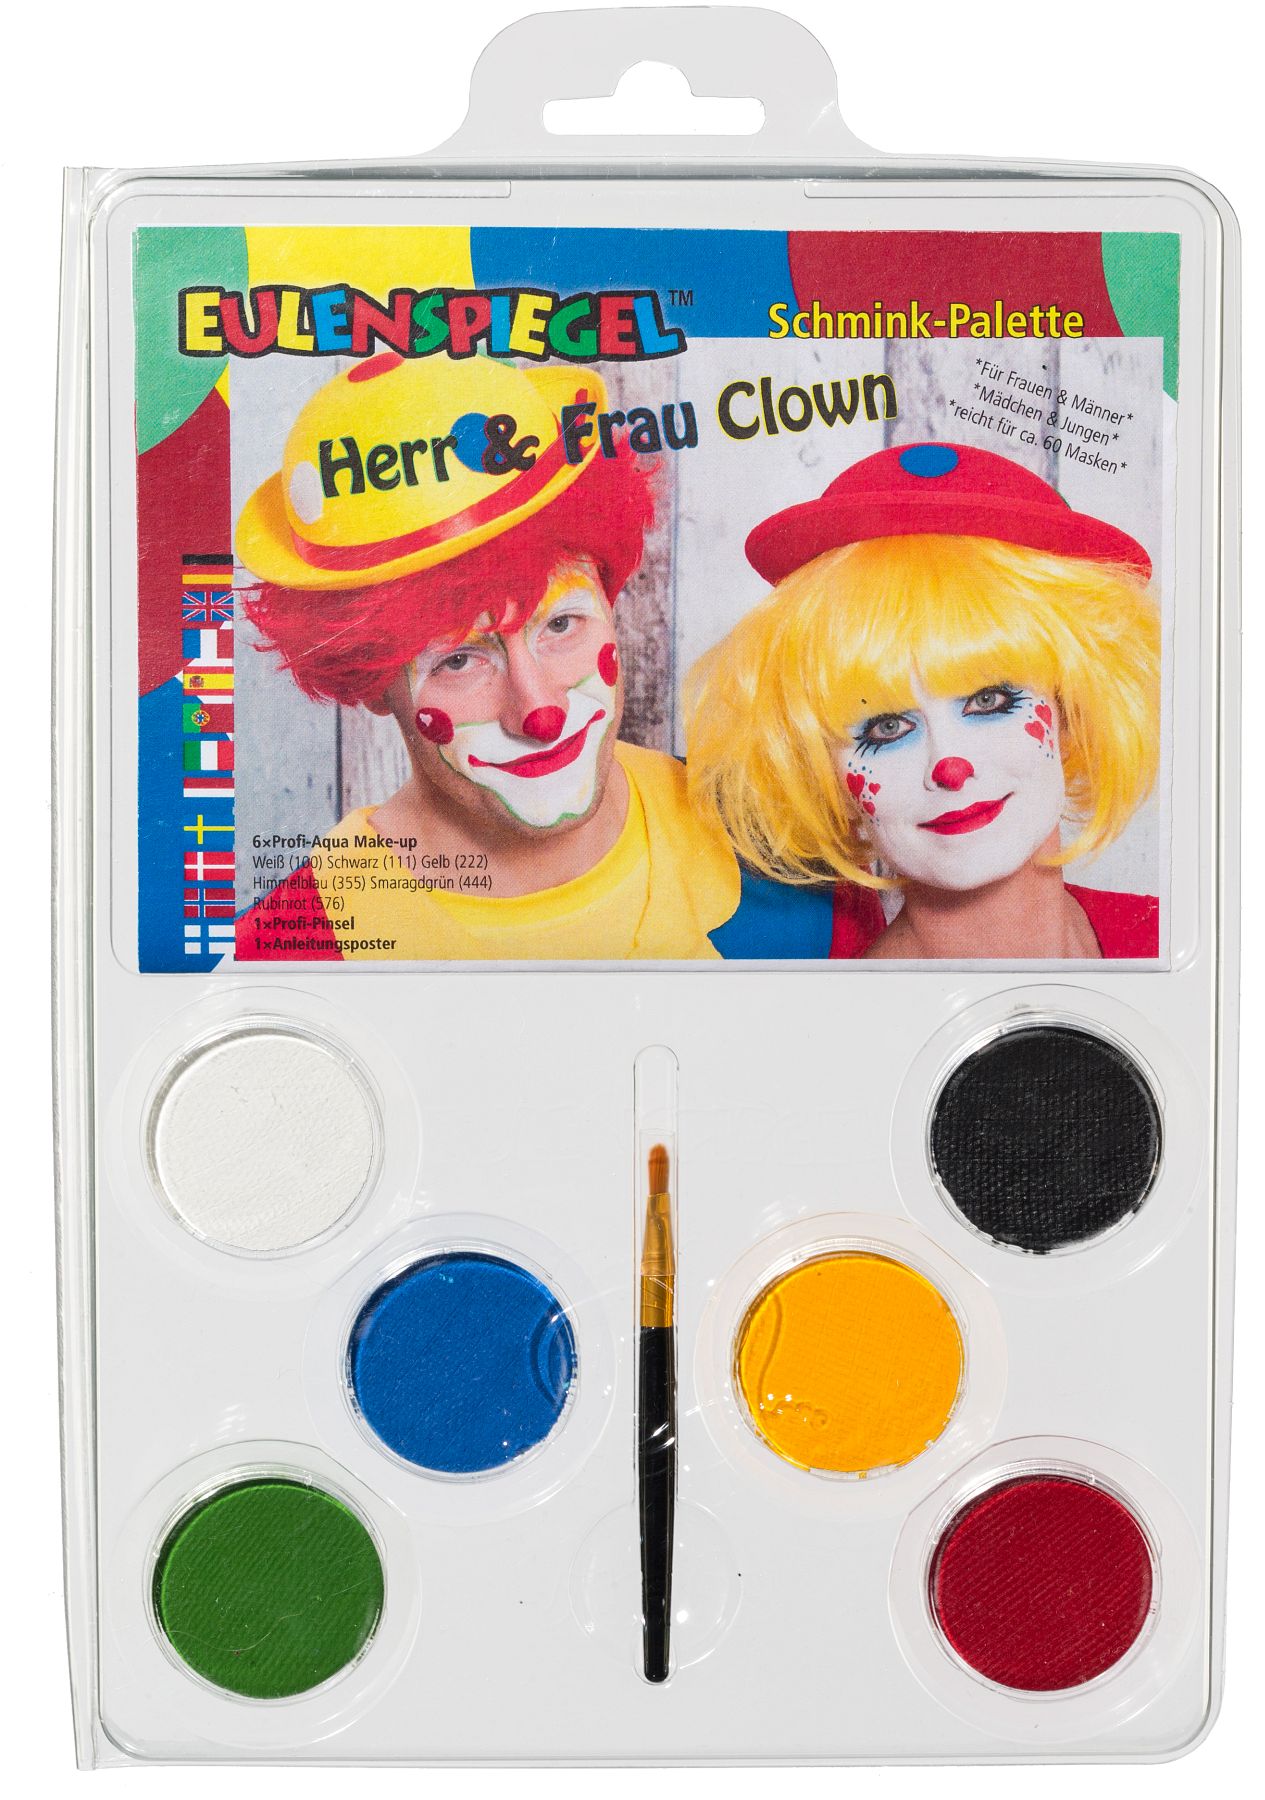 Make-up Palette Family Clown